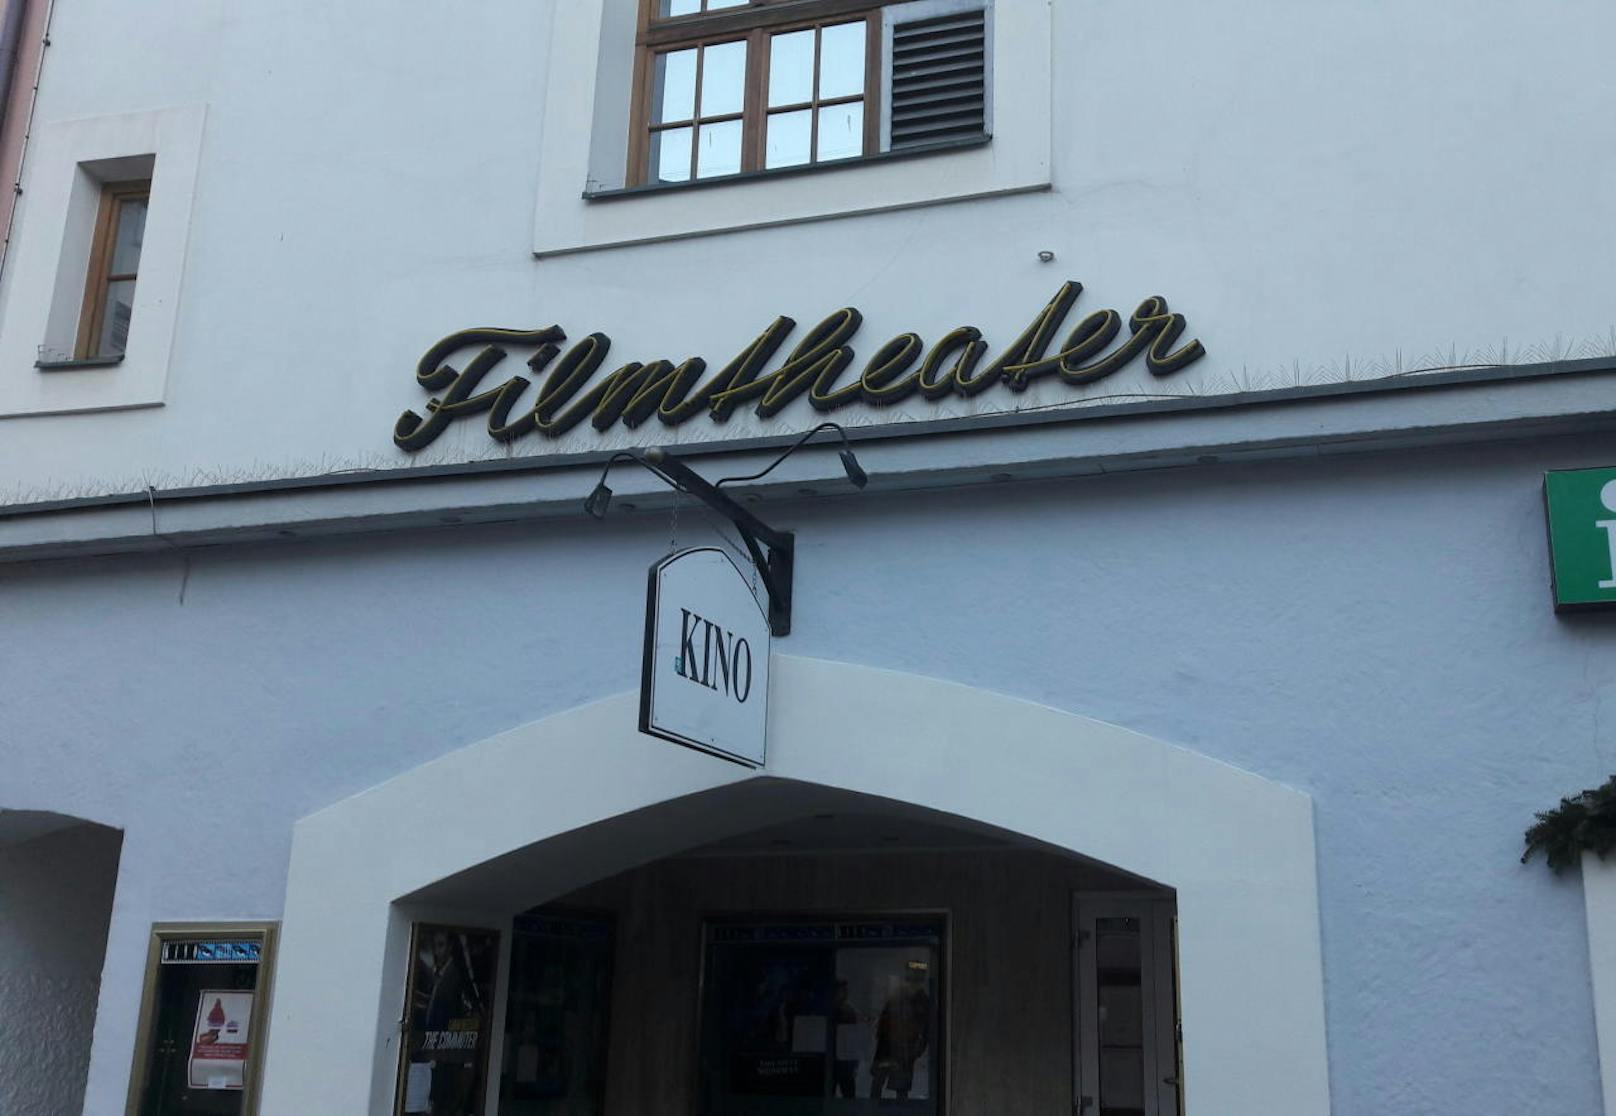 Filmtheater, besser bekannt als Kino.